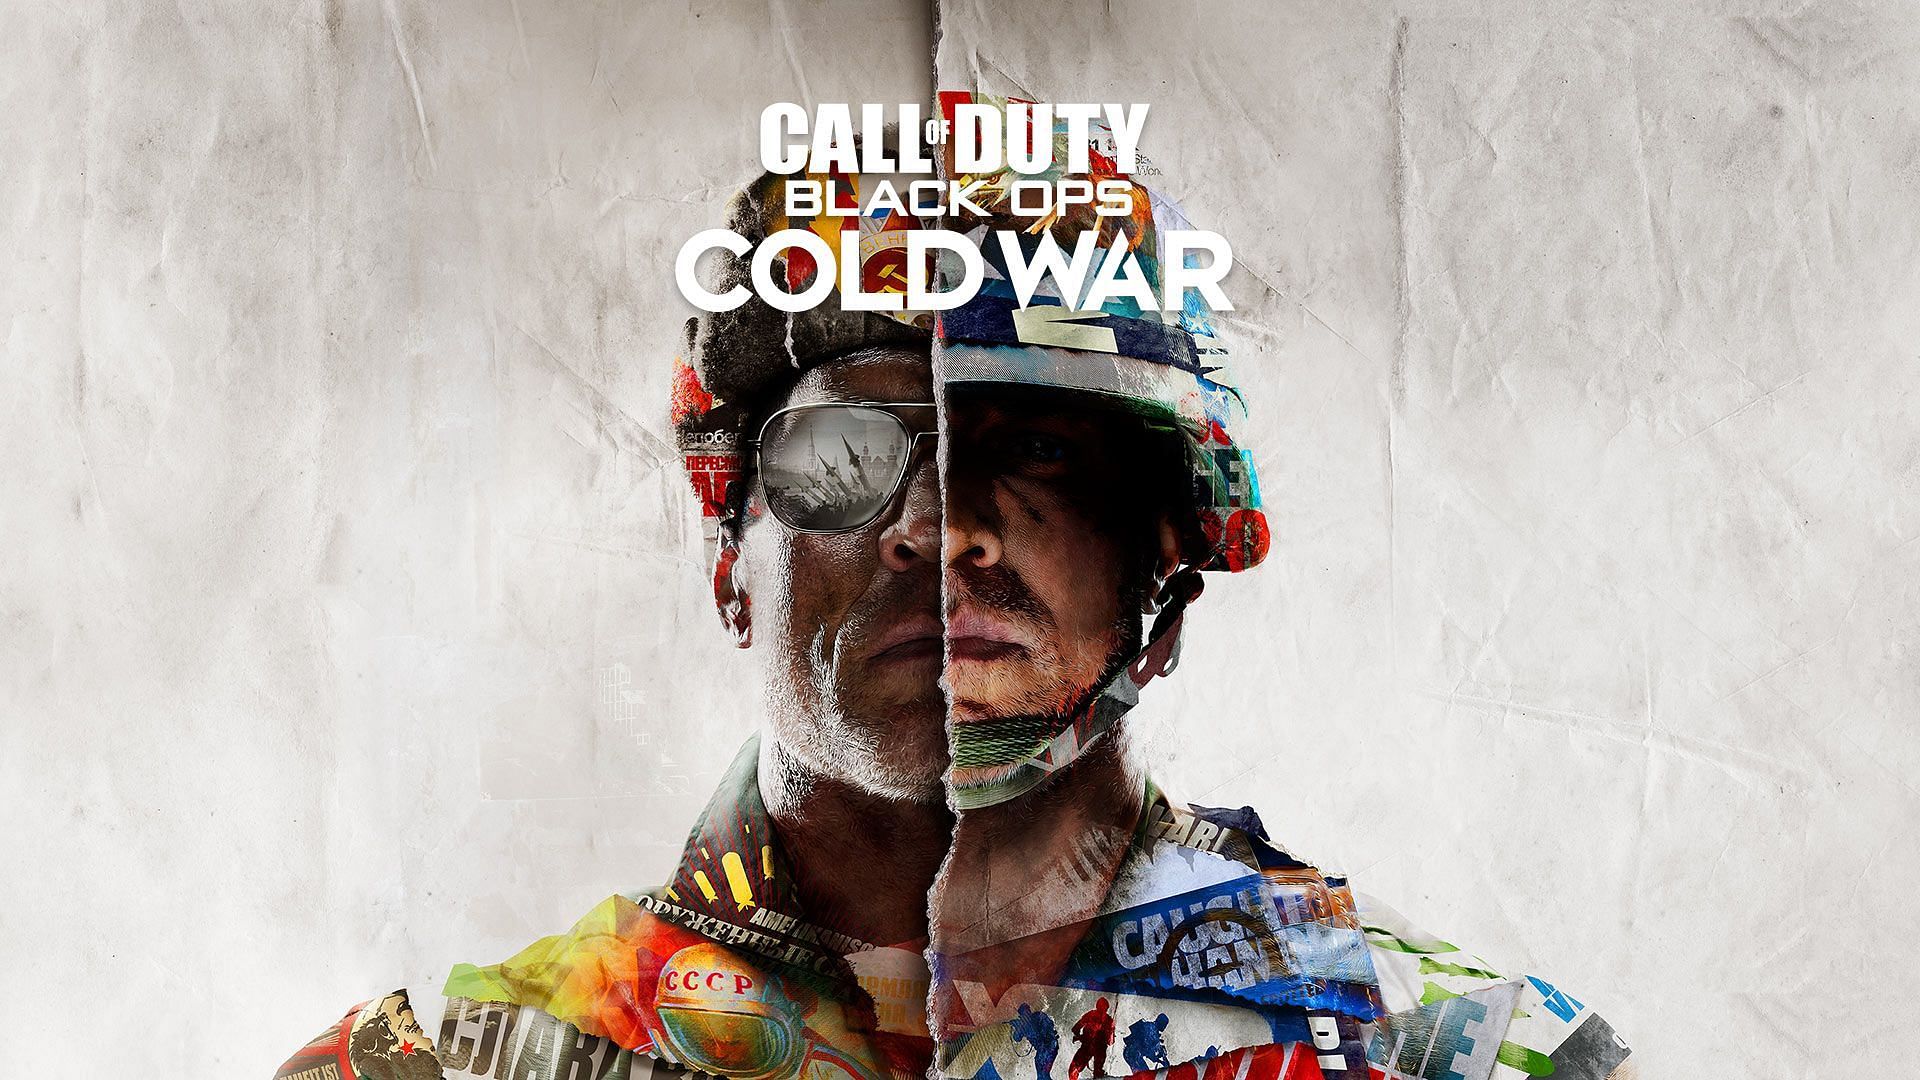 Black Ops Cold War (2020) (Image via Activision)